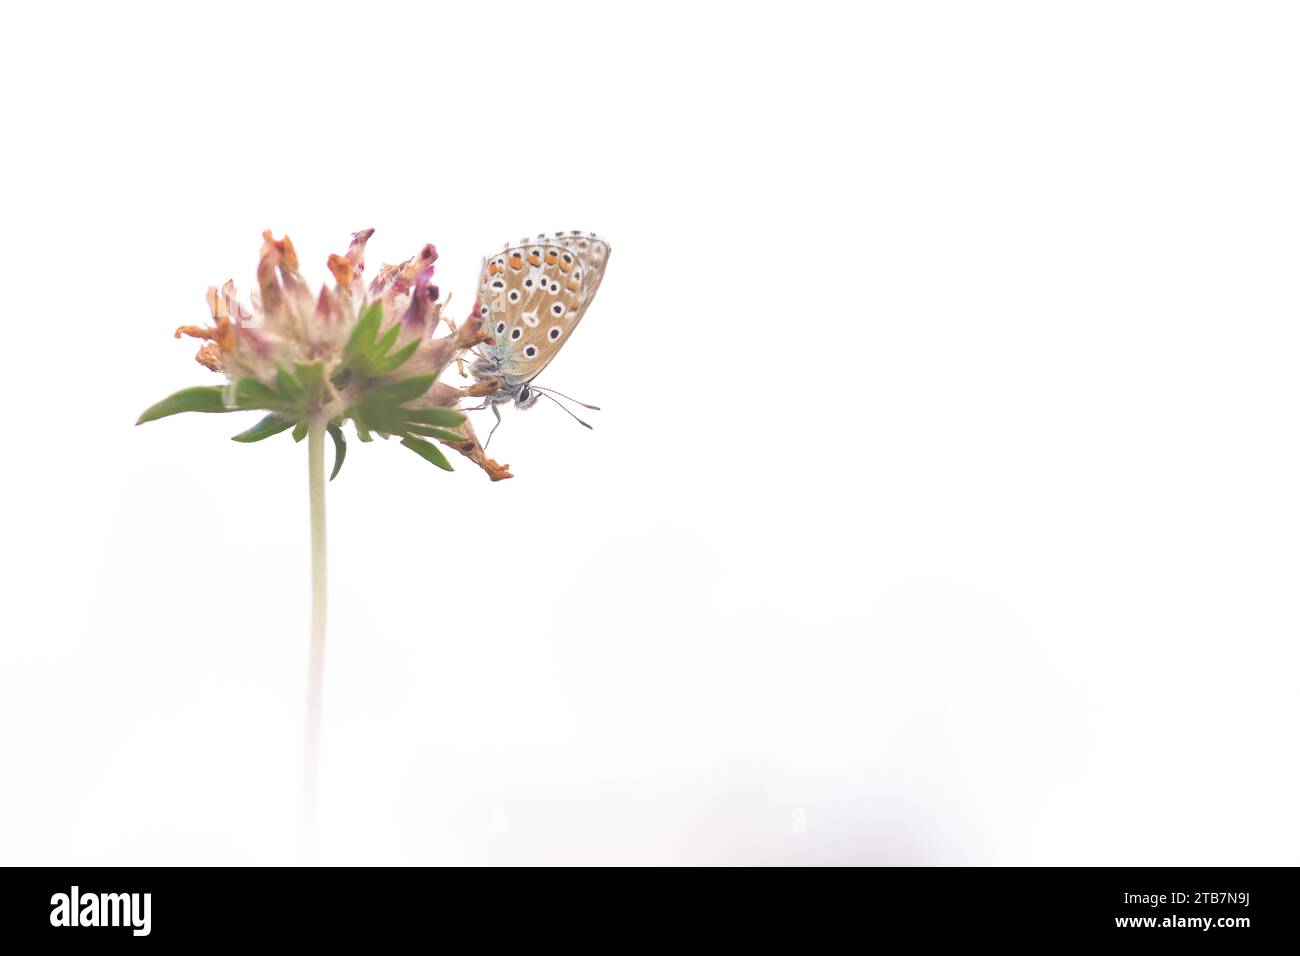 Ein sanfter Schmetterling thront elegant auf einer blühenden Blume, vor einem weichen, reinweißen Hintergrund, der ein Gefühl von Ruhe und natürlicher Schönheit weckt Stockfoto